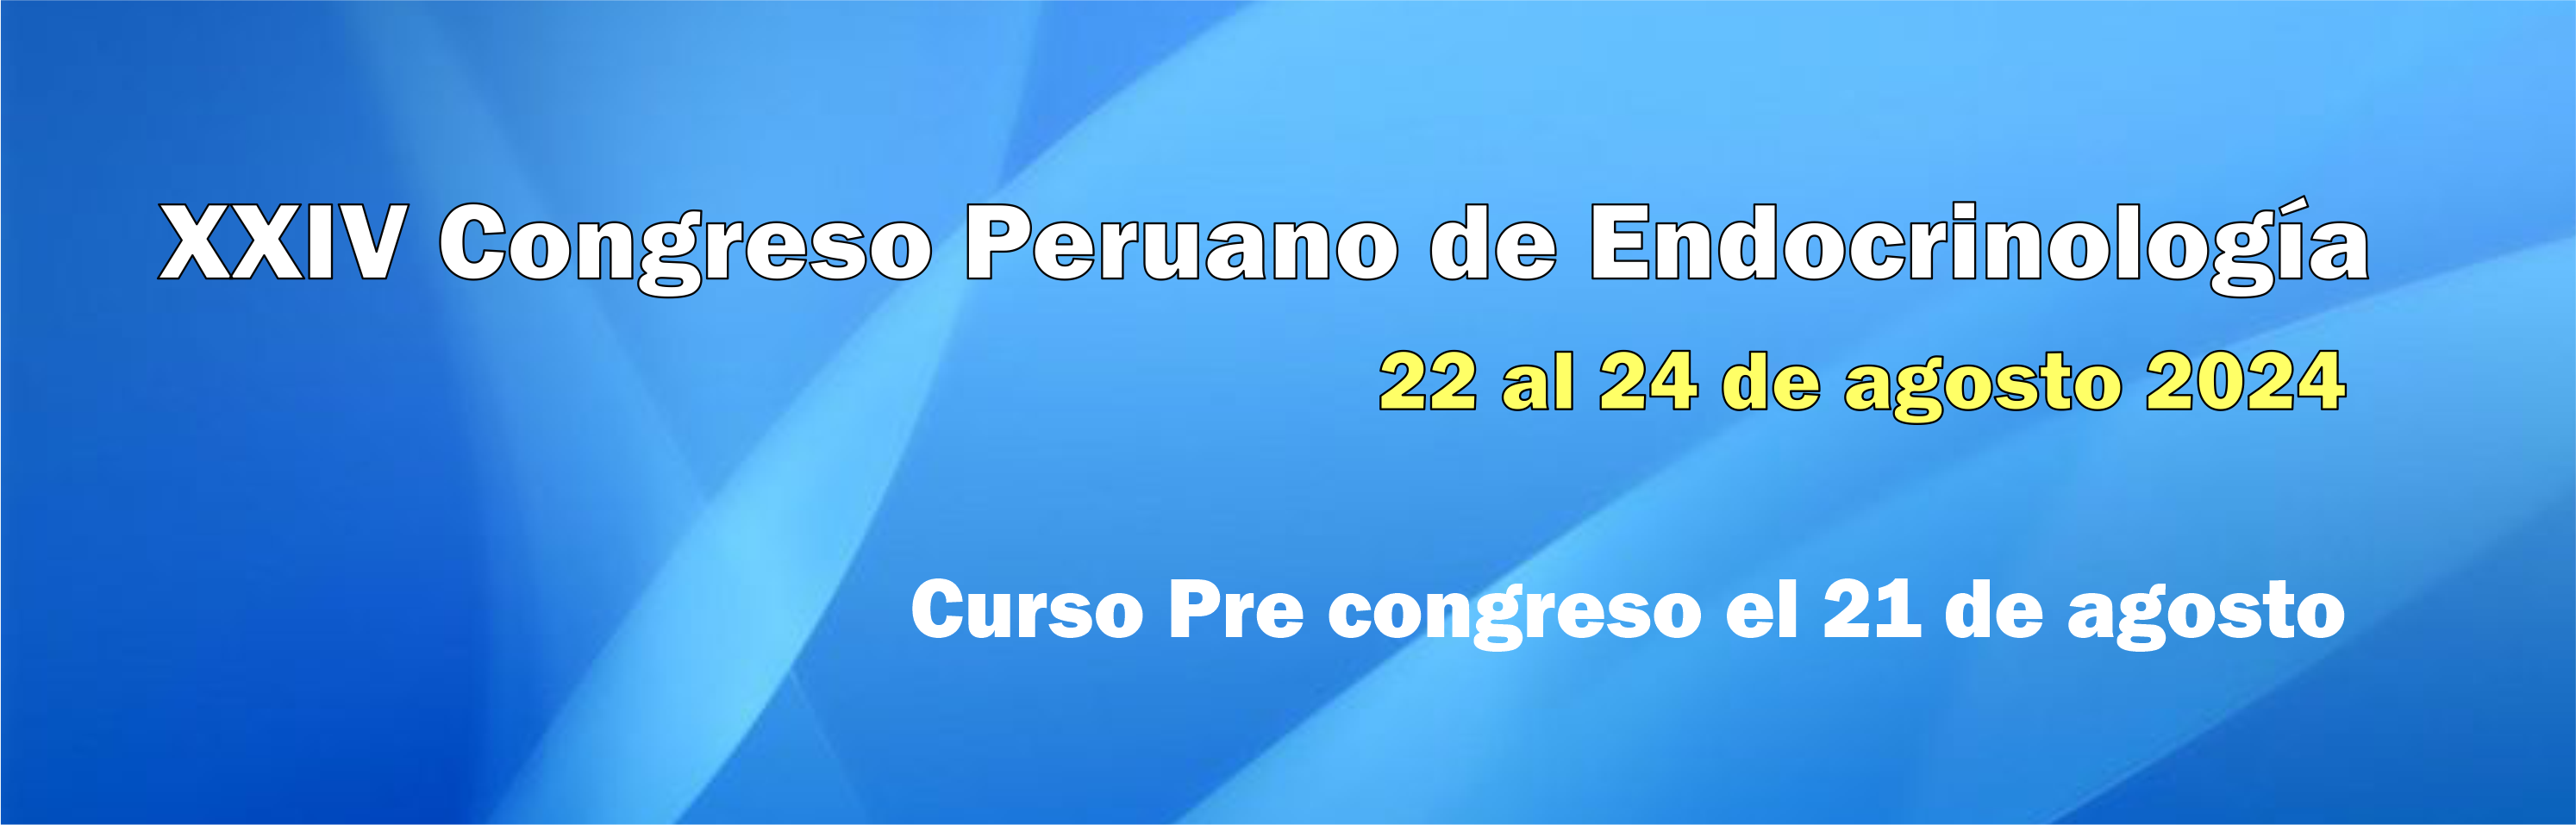 congreso-endocrino-2024.png